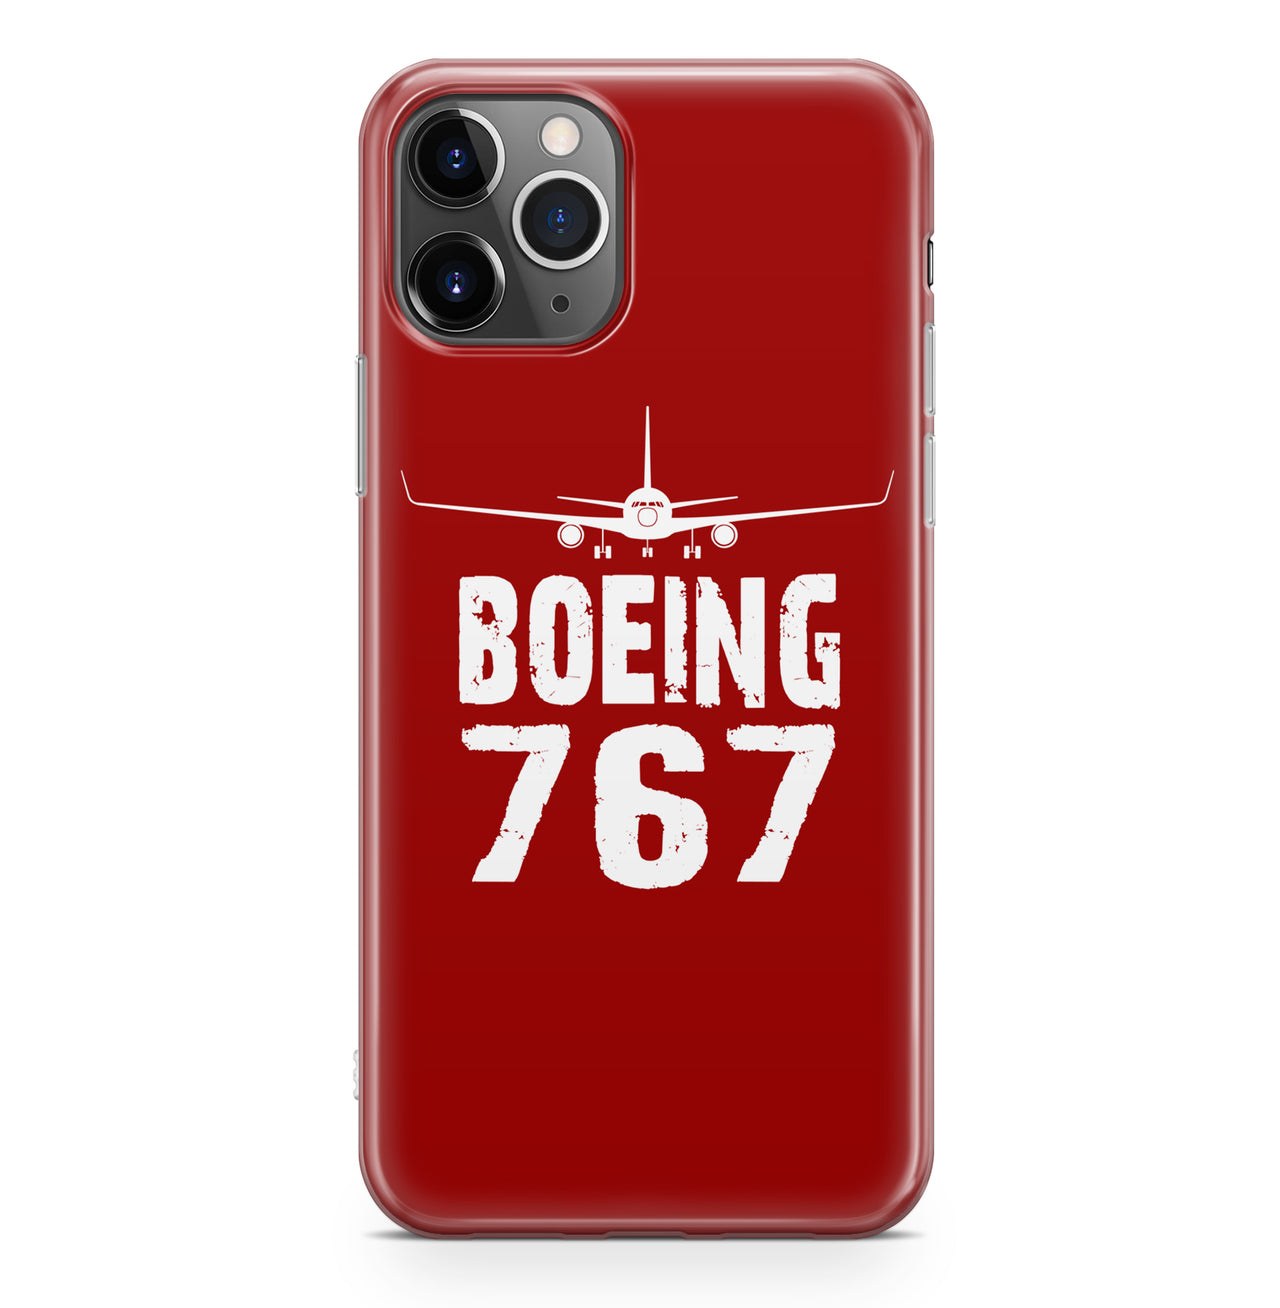 Boeing 767 & Plane Designed iPhone Cases